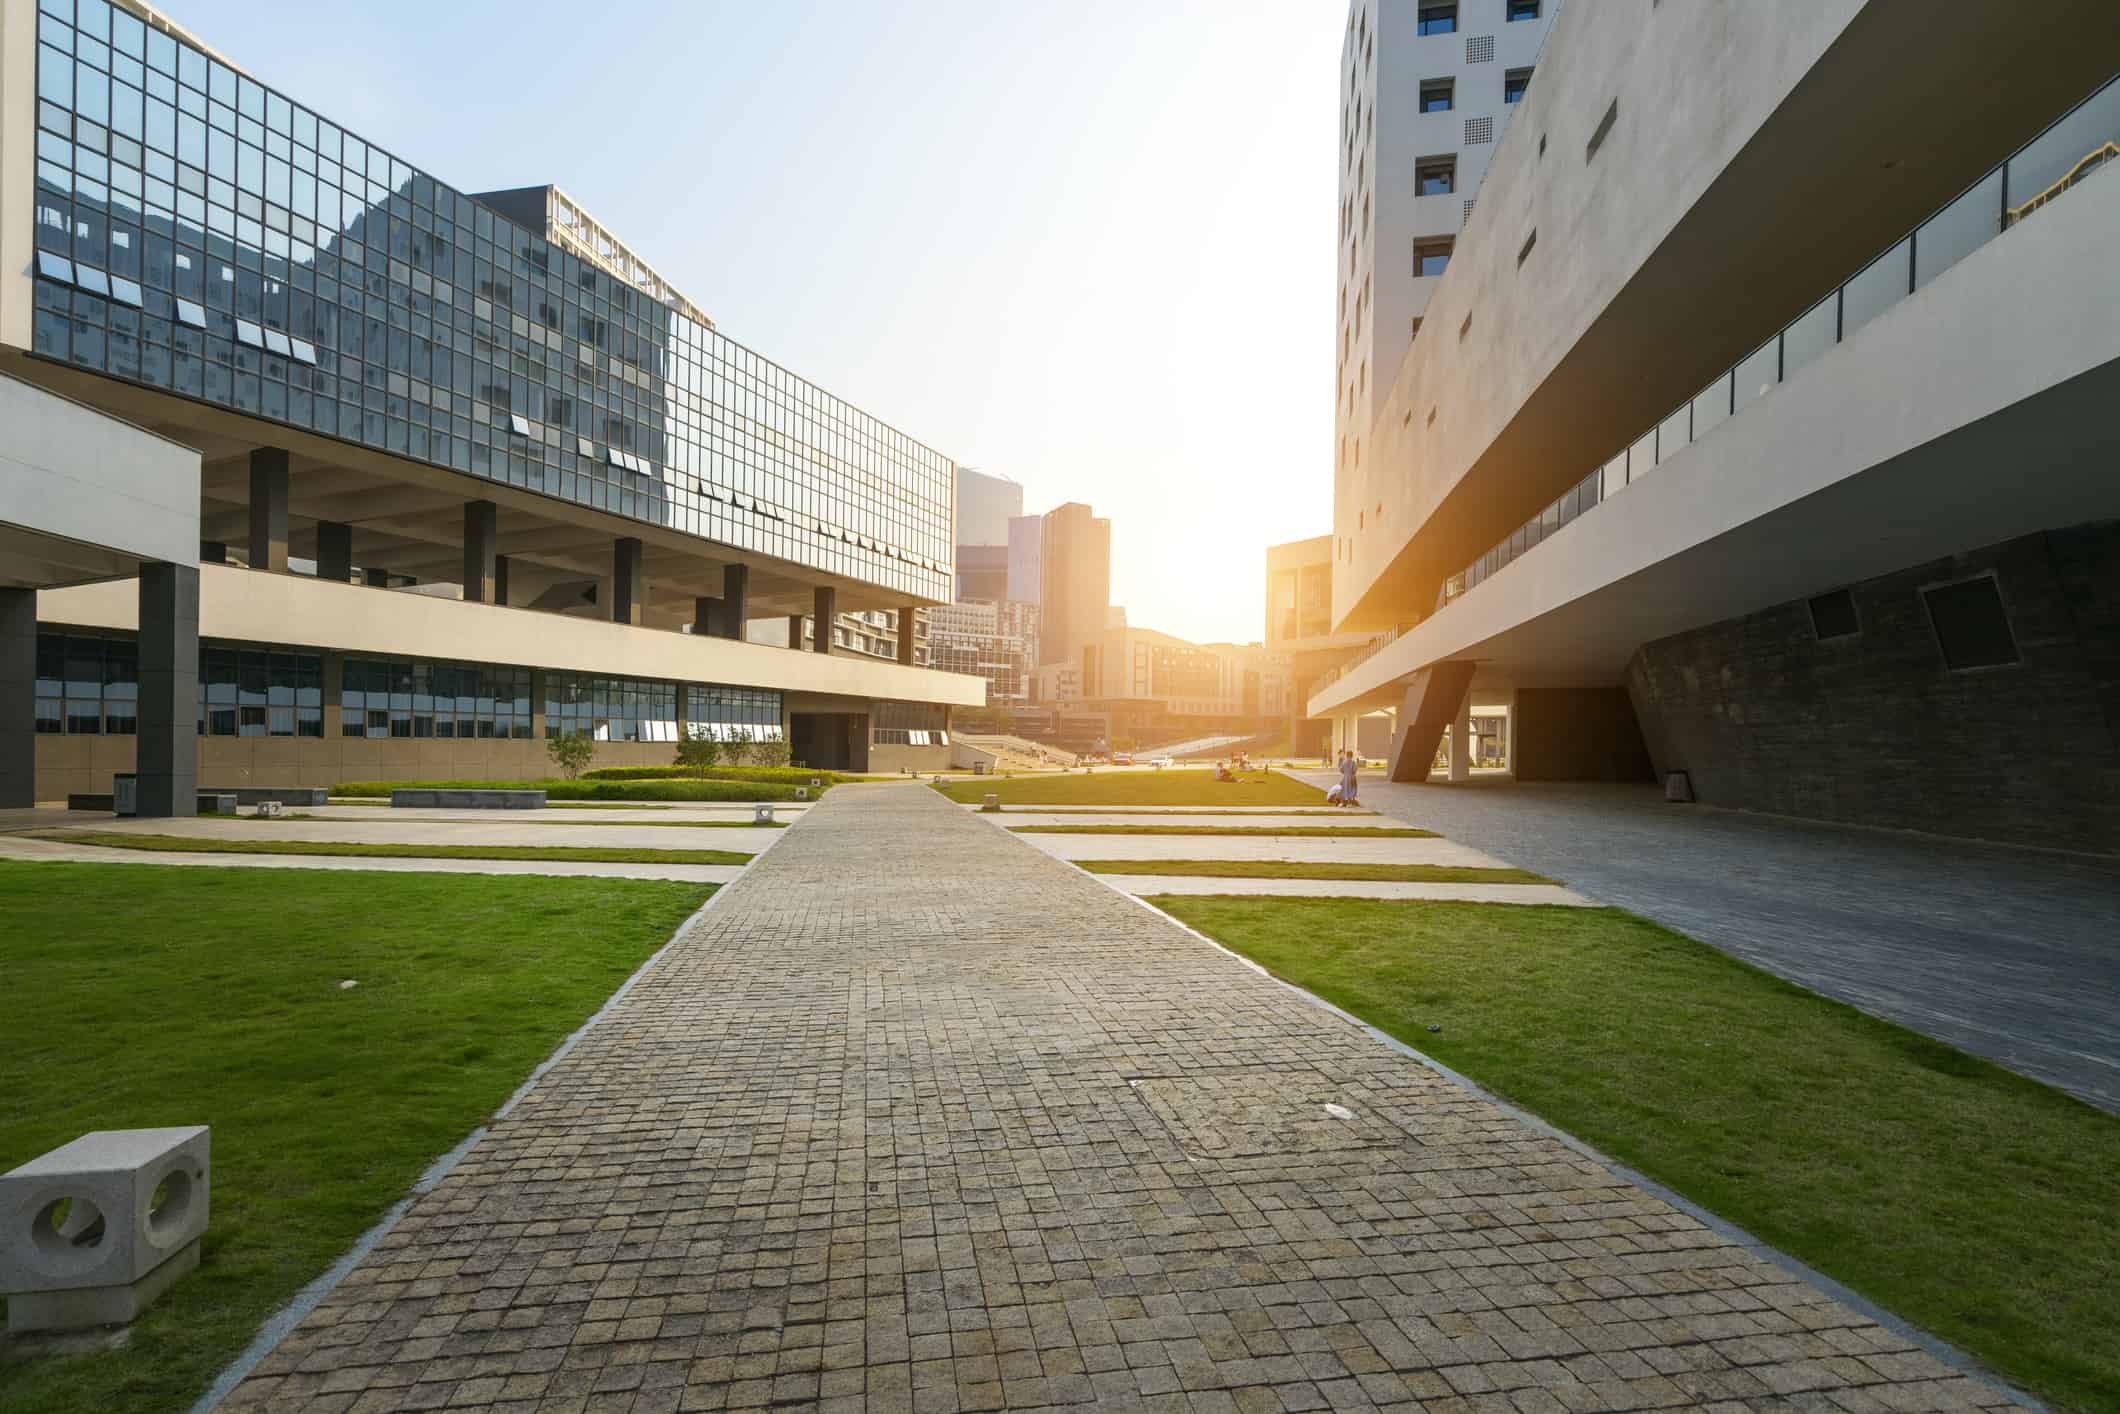 Il moderno edificio didattico si trova all'università di Shenzhen, in Cina